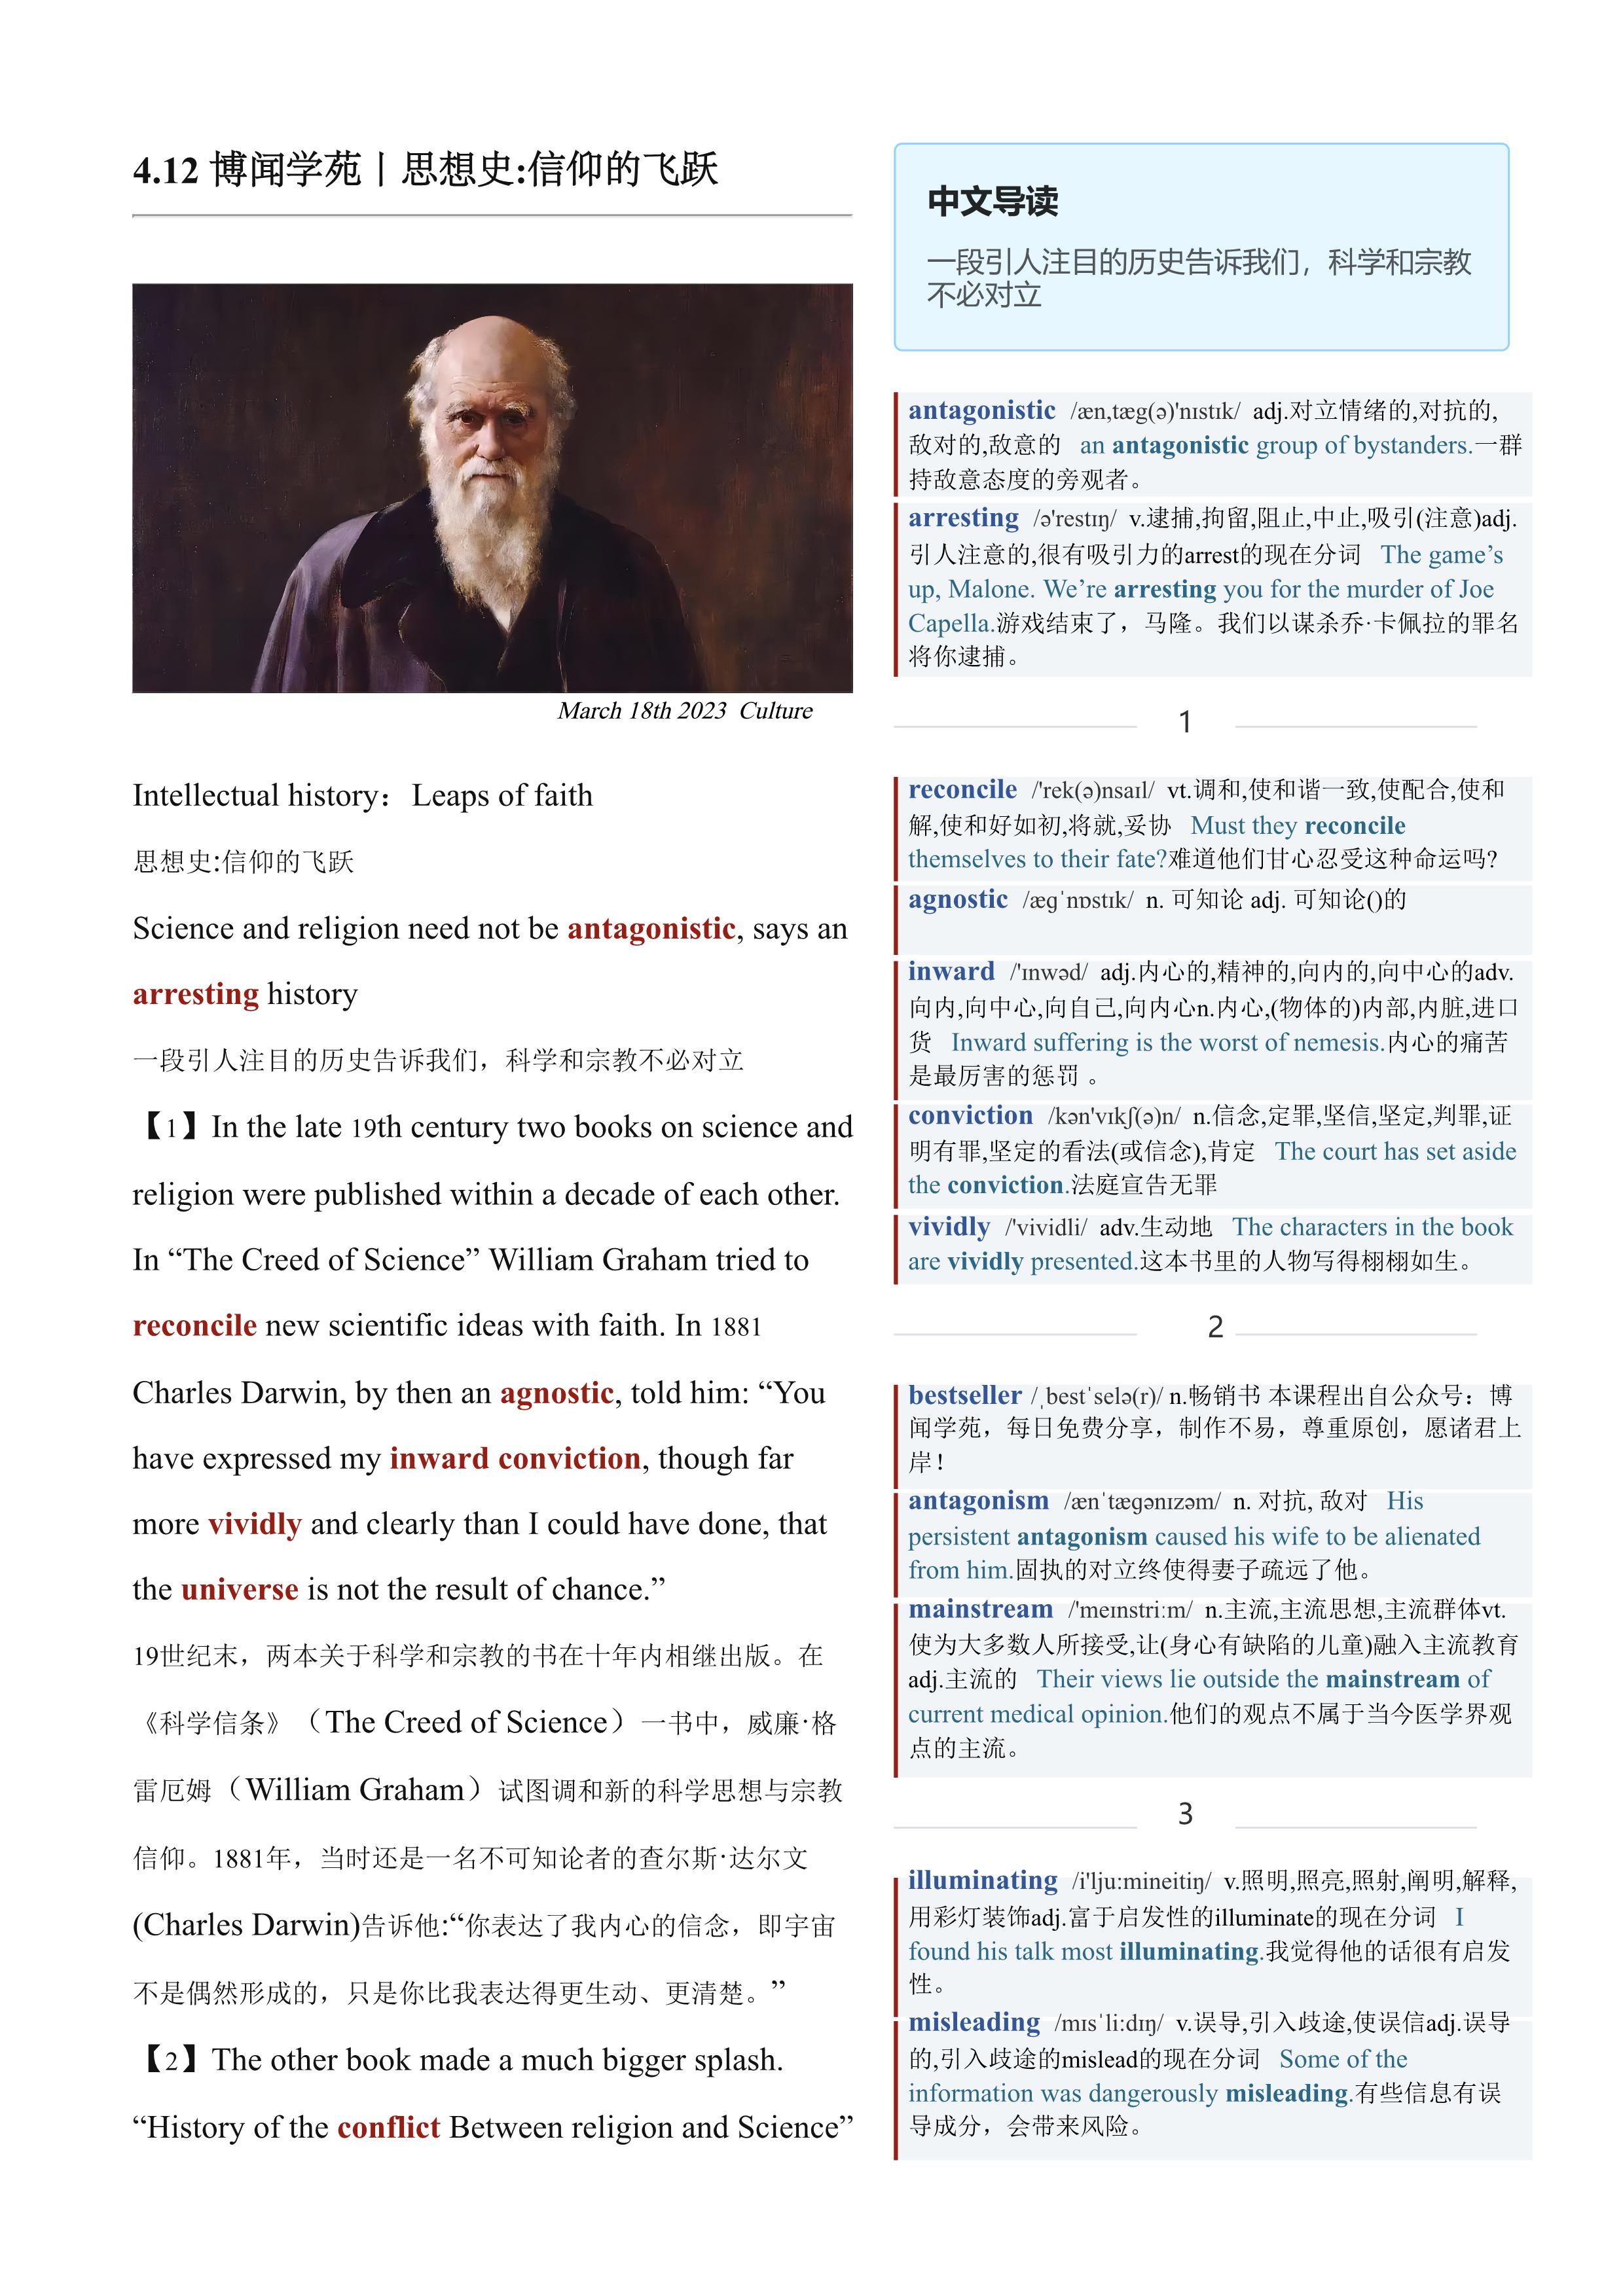 2023.04.12 经济学人双语精读丨思想史:信仰的飞跃 (.PDF/DOC/MP3)